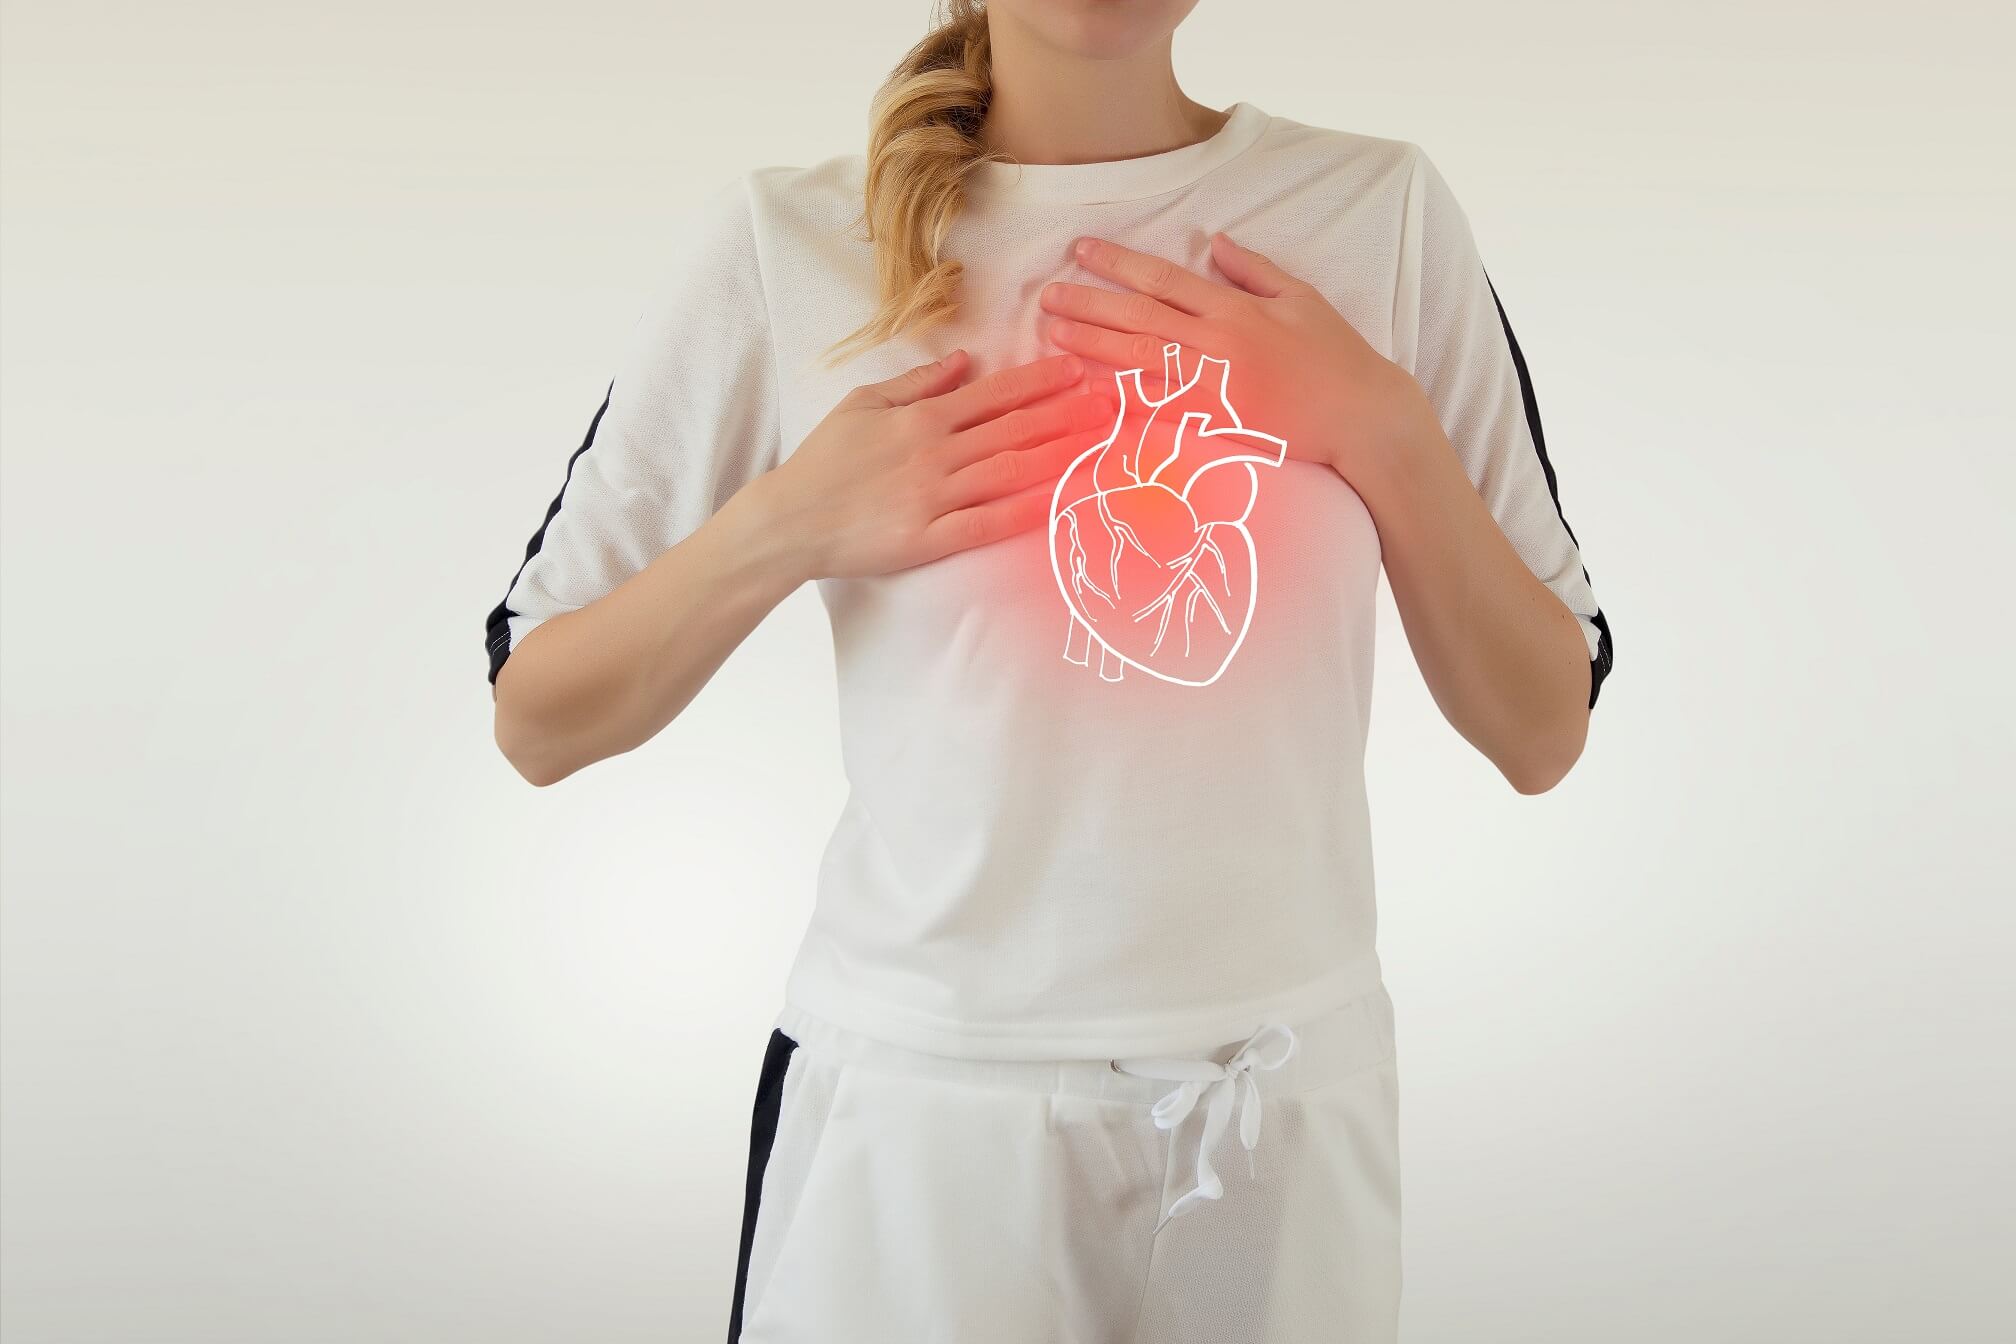 Pichanie pri srdci: Kedy vyhľadať lekársku pomoc?